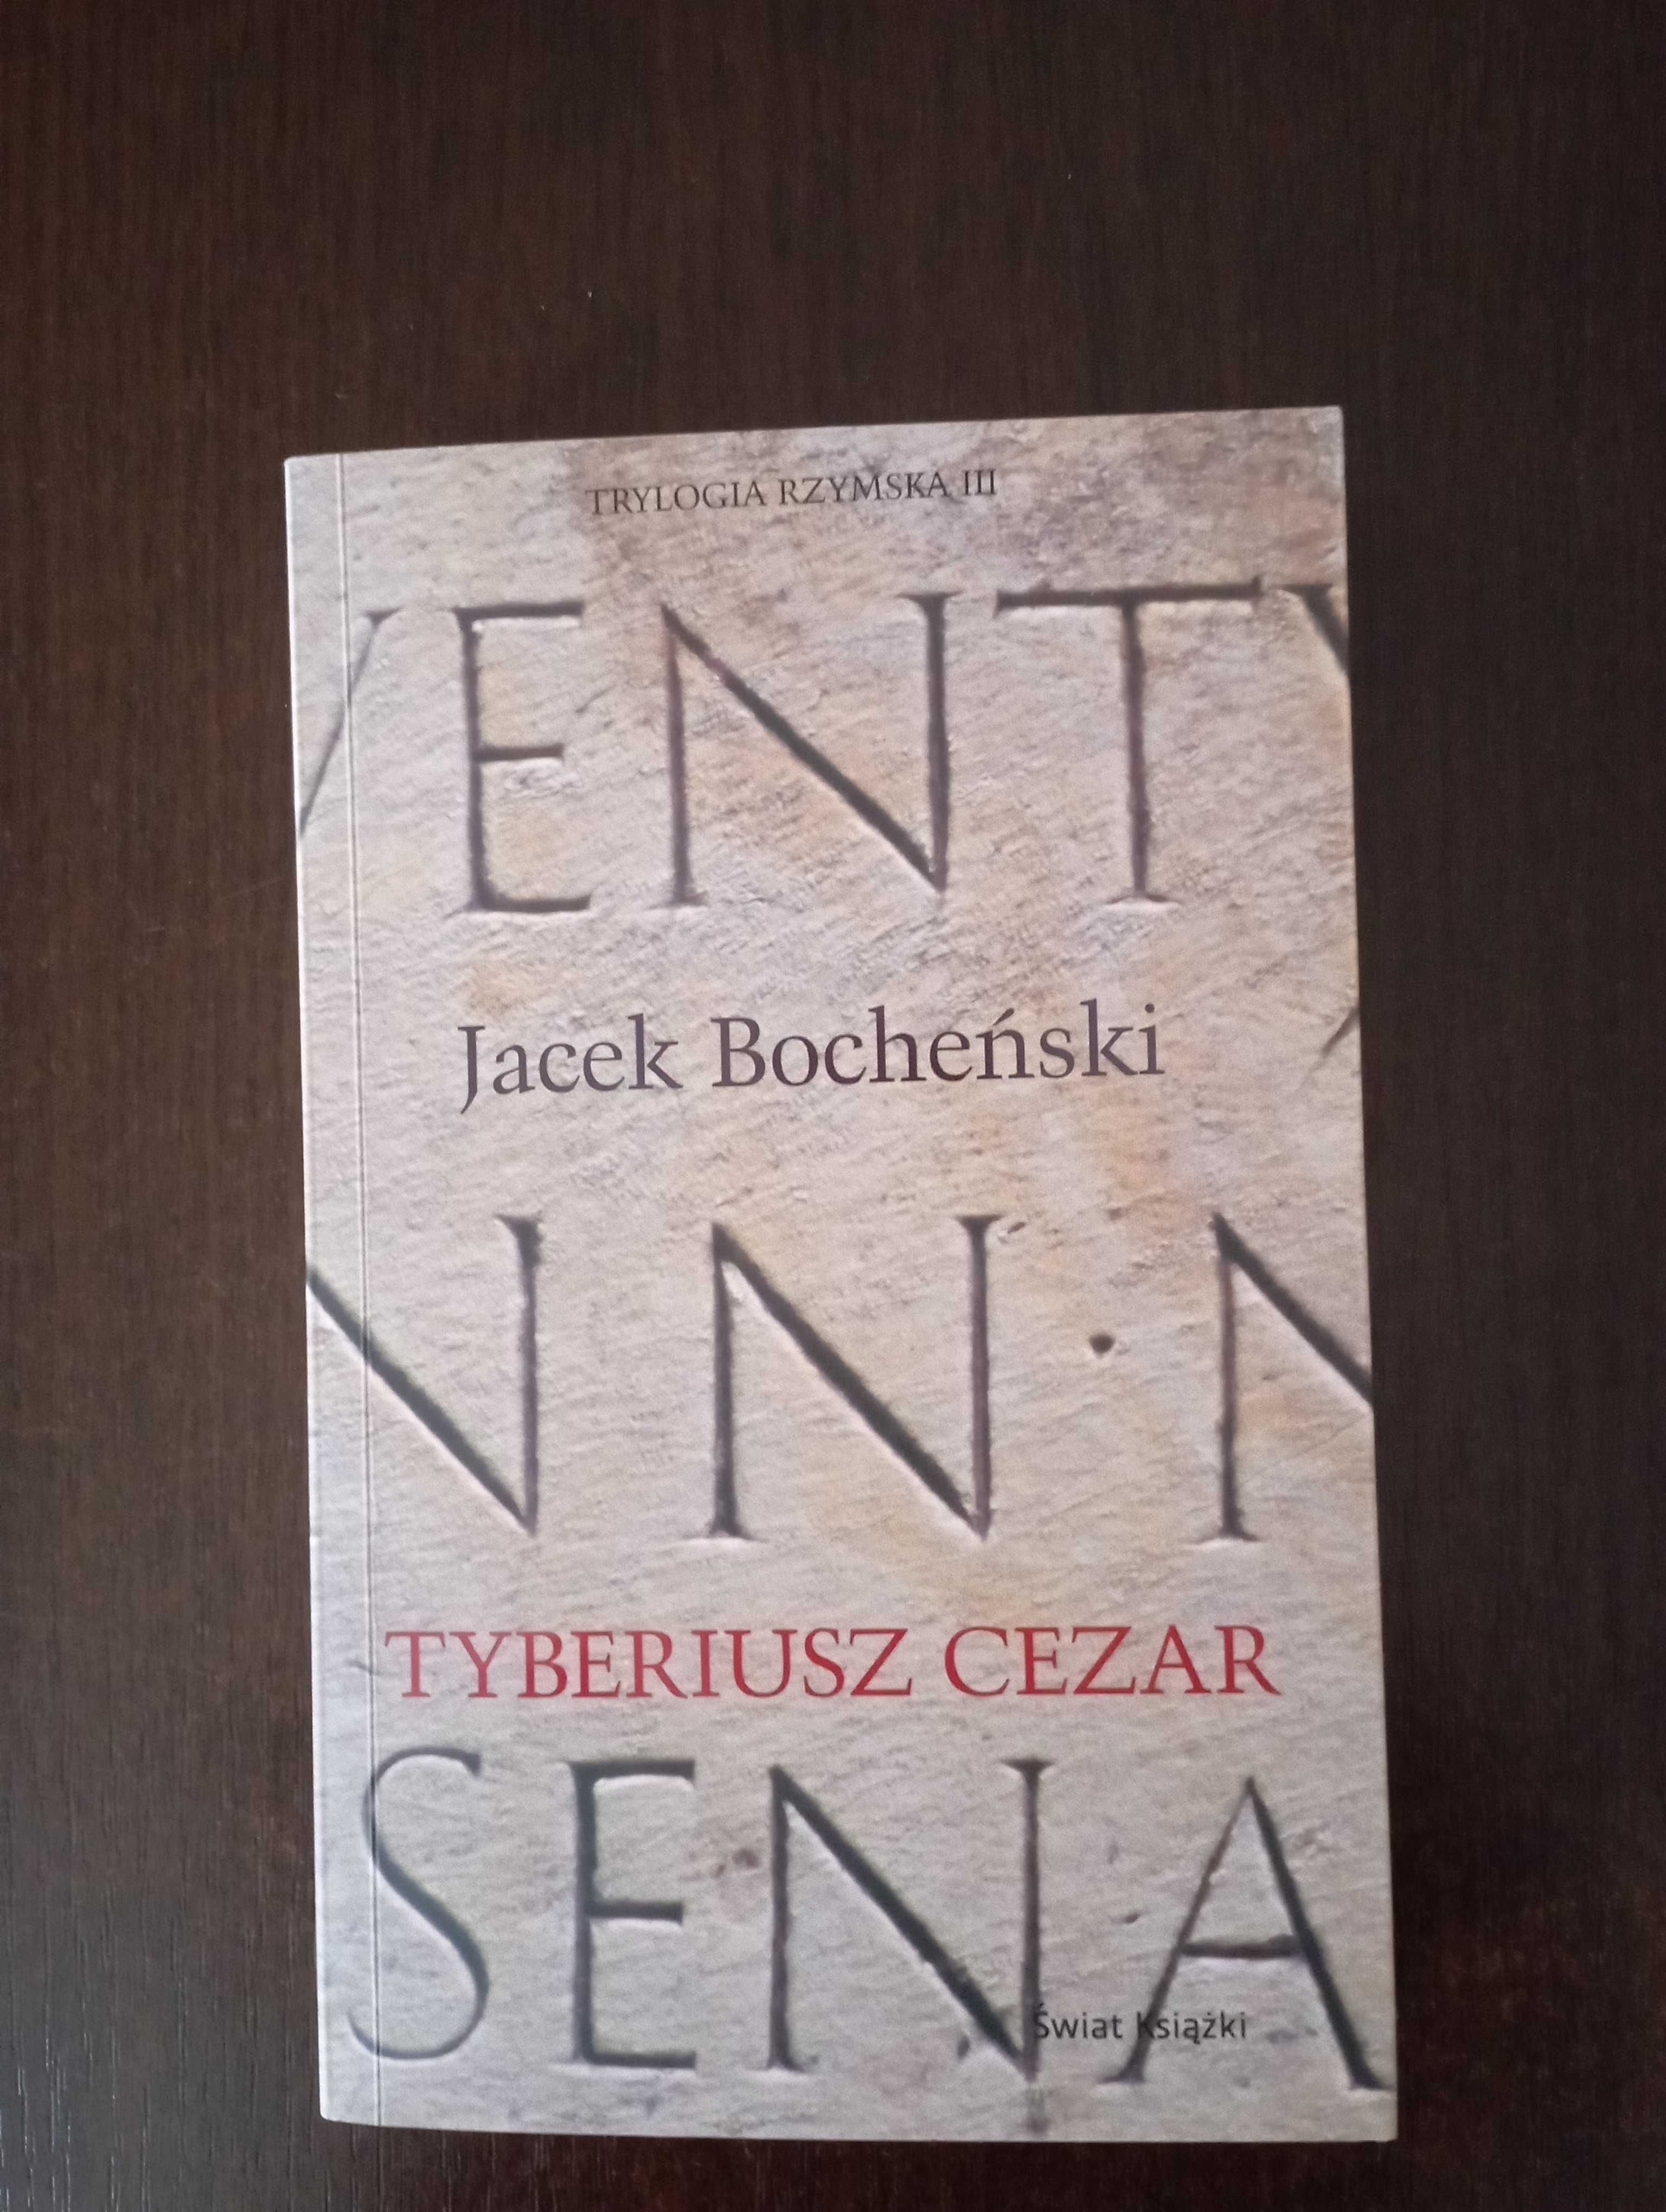 Jacek Bocheński "Tyberiusz Cezar"